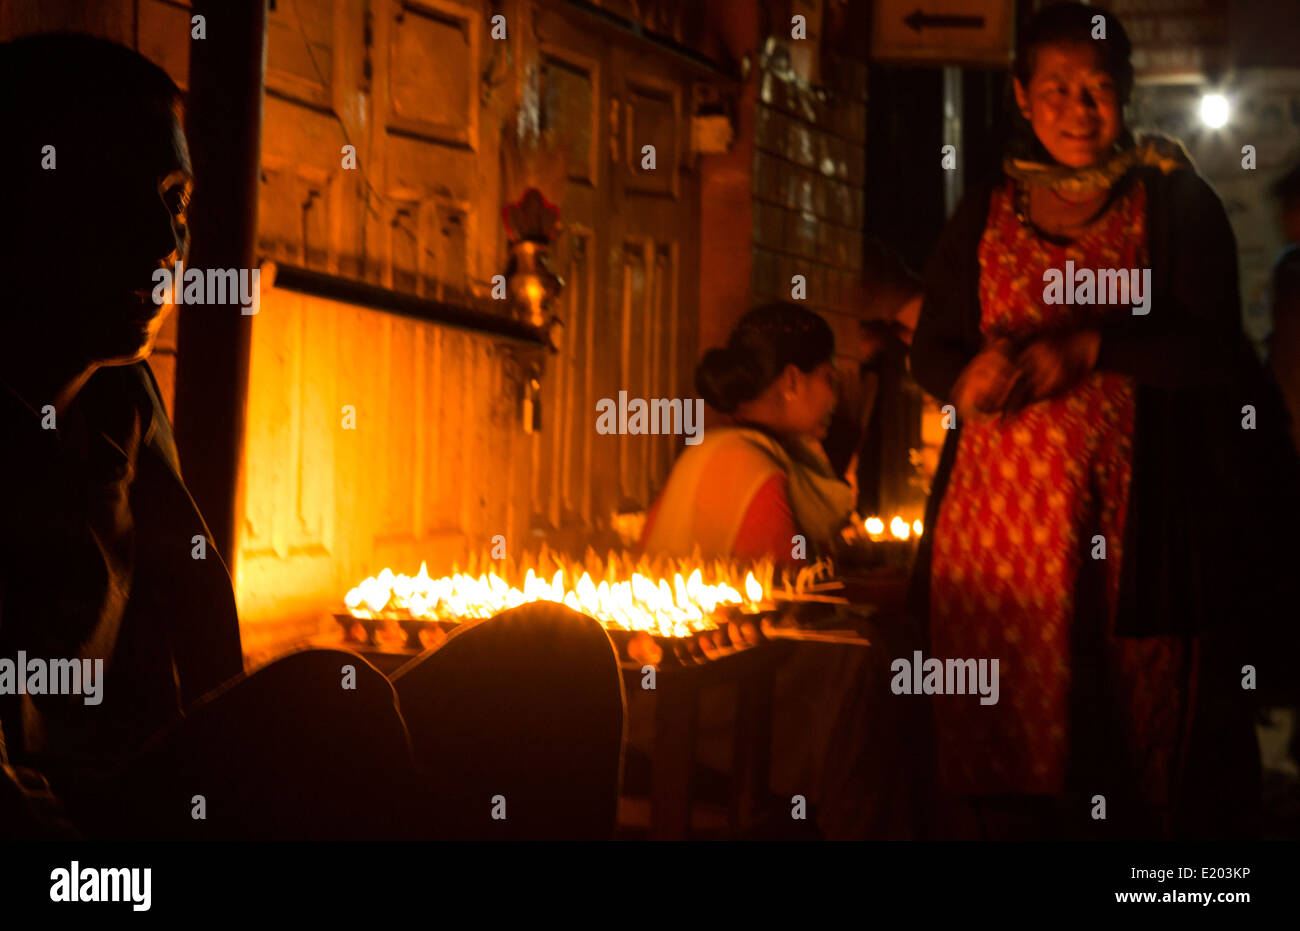 Katmandou Népal la vente de beurre de l'éclairage des bougies pour être allumé pour la prière tôt le matin au bouddhisme Stupa Boudhanath 8 Banque D'Images